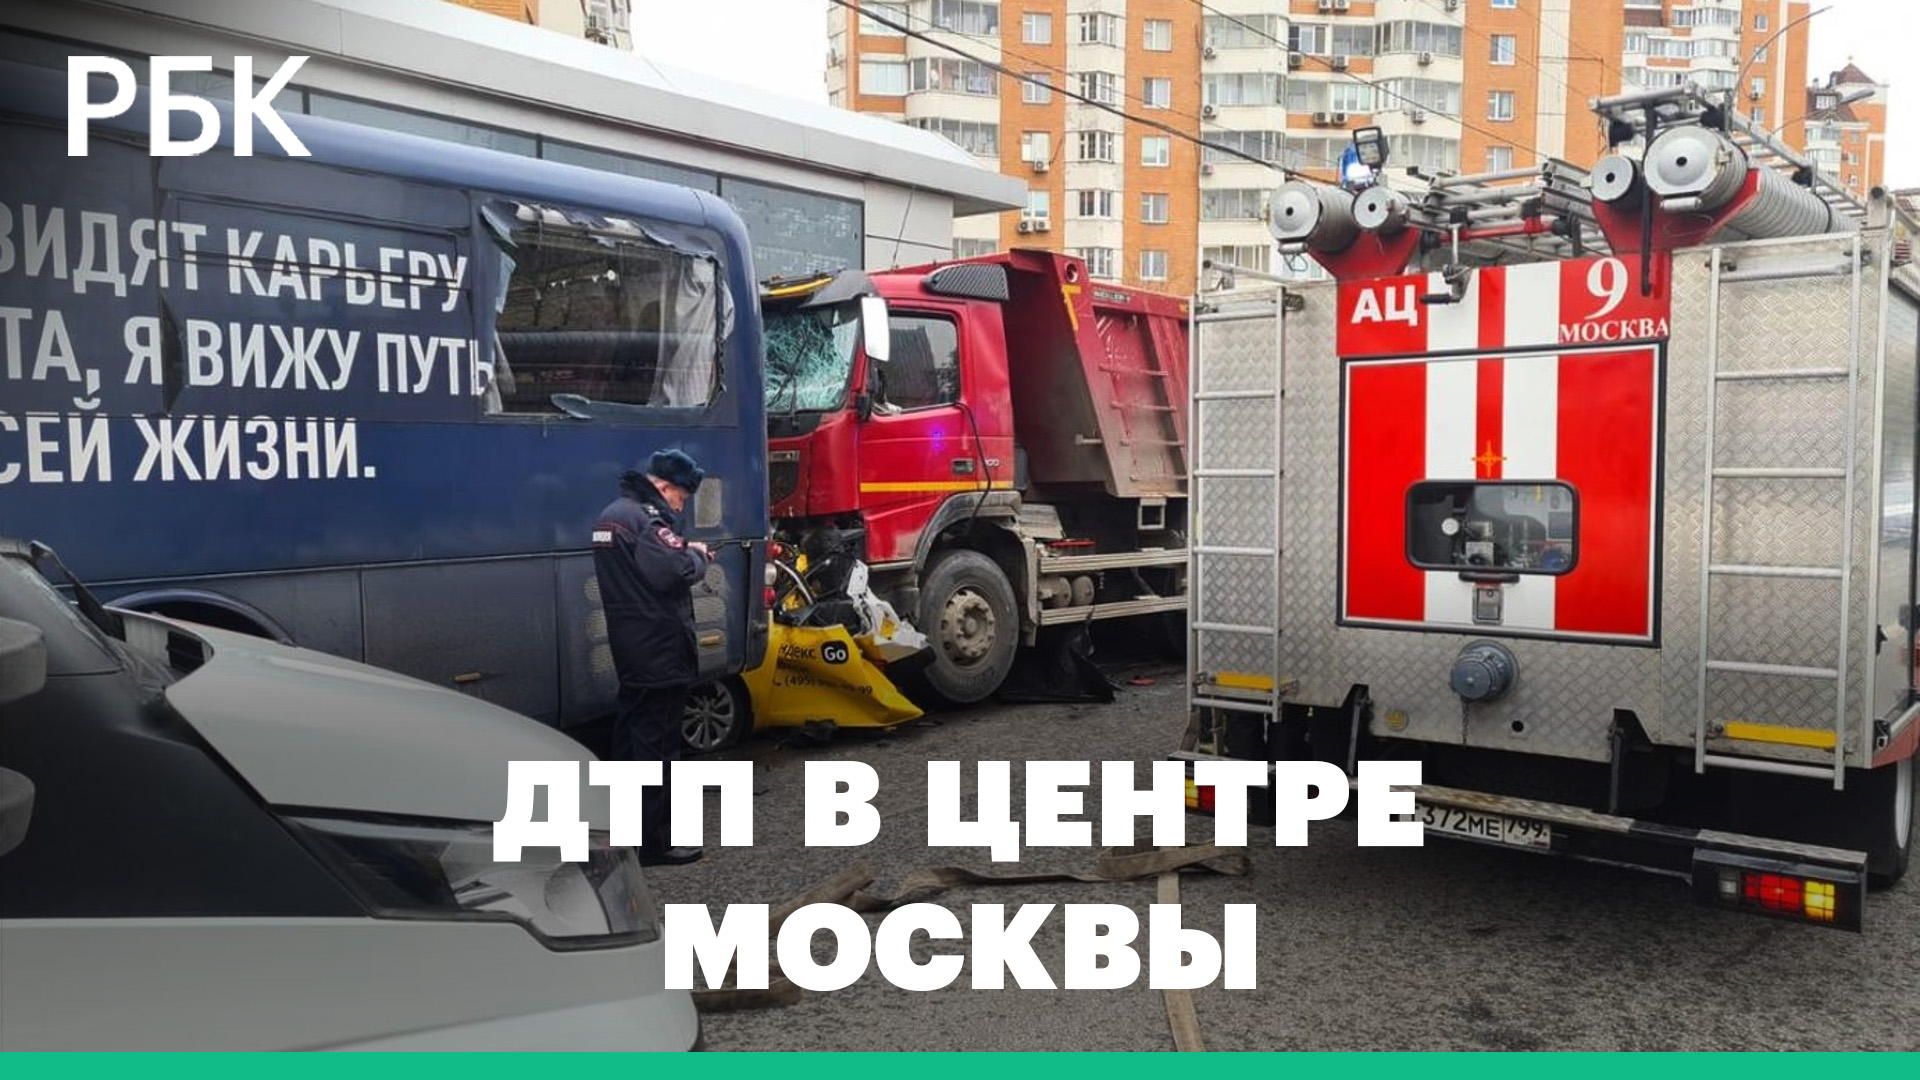 Грузовик врезался в такси в центре Москвы